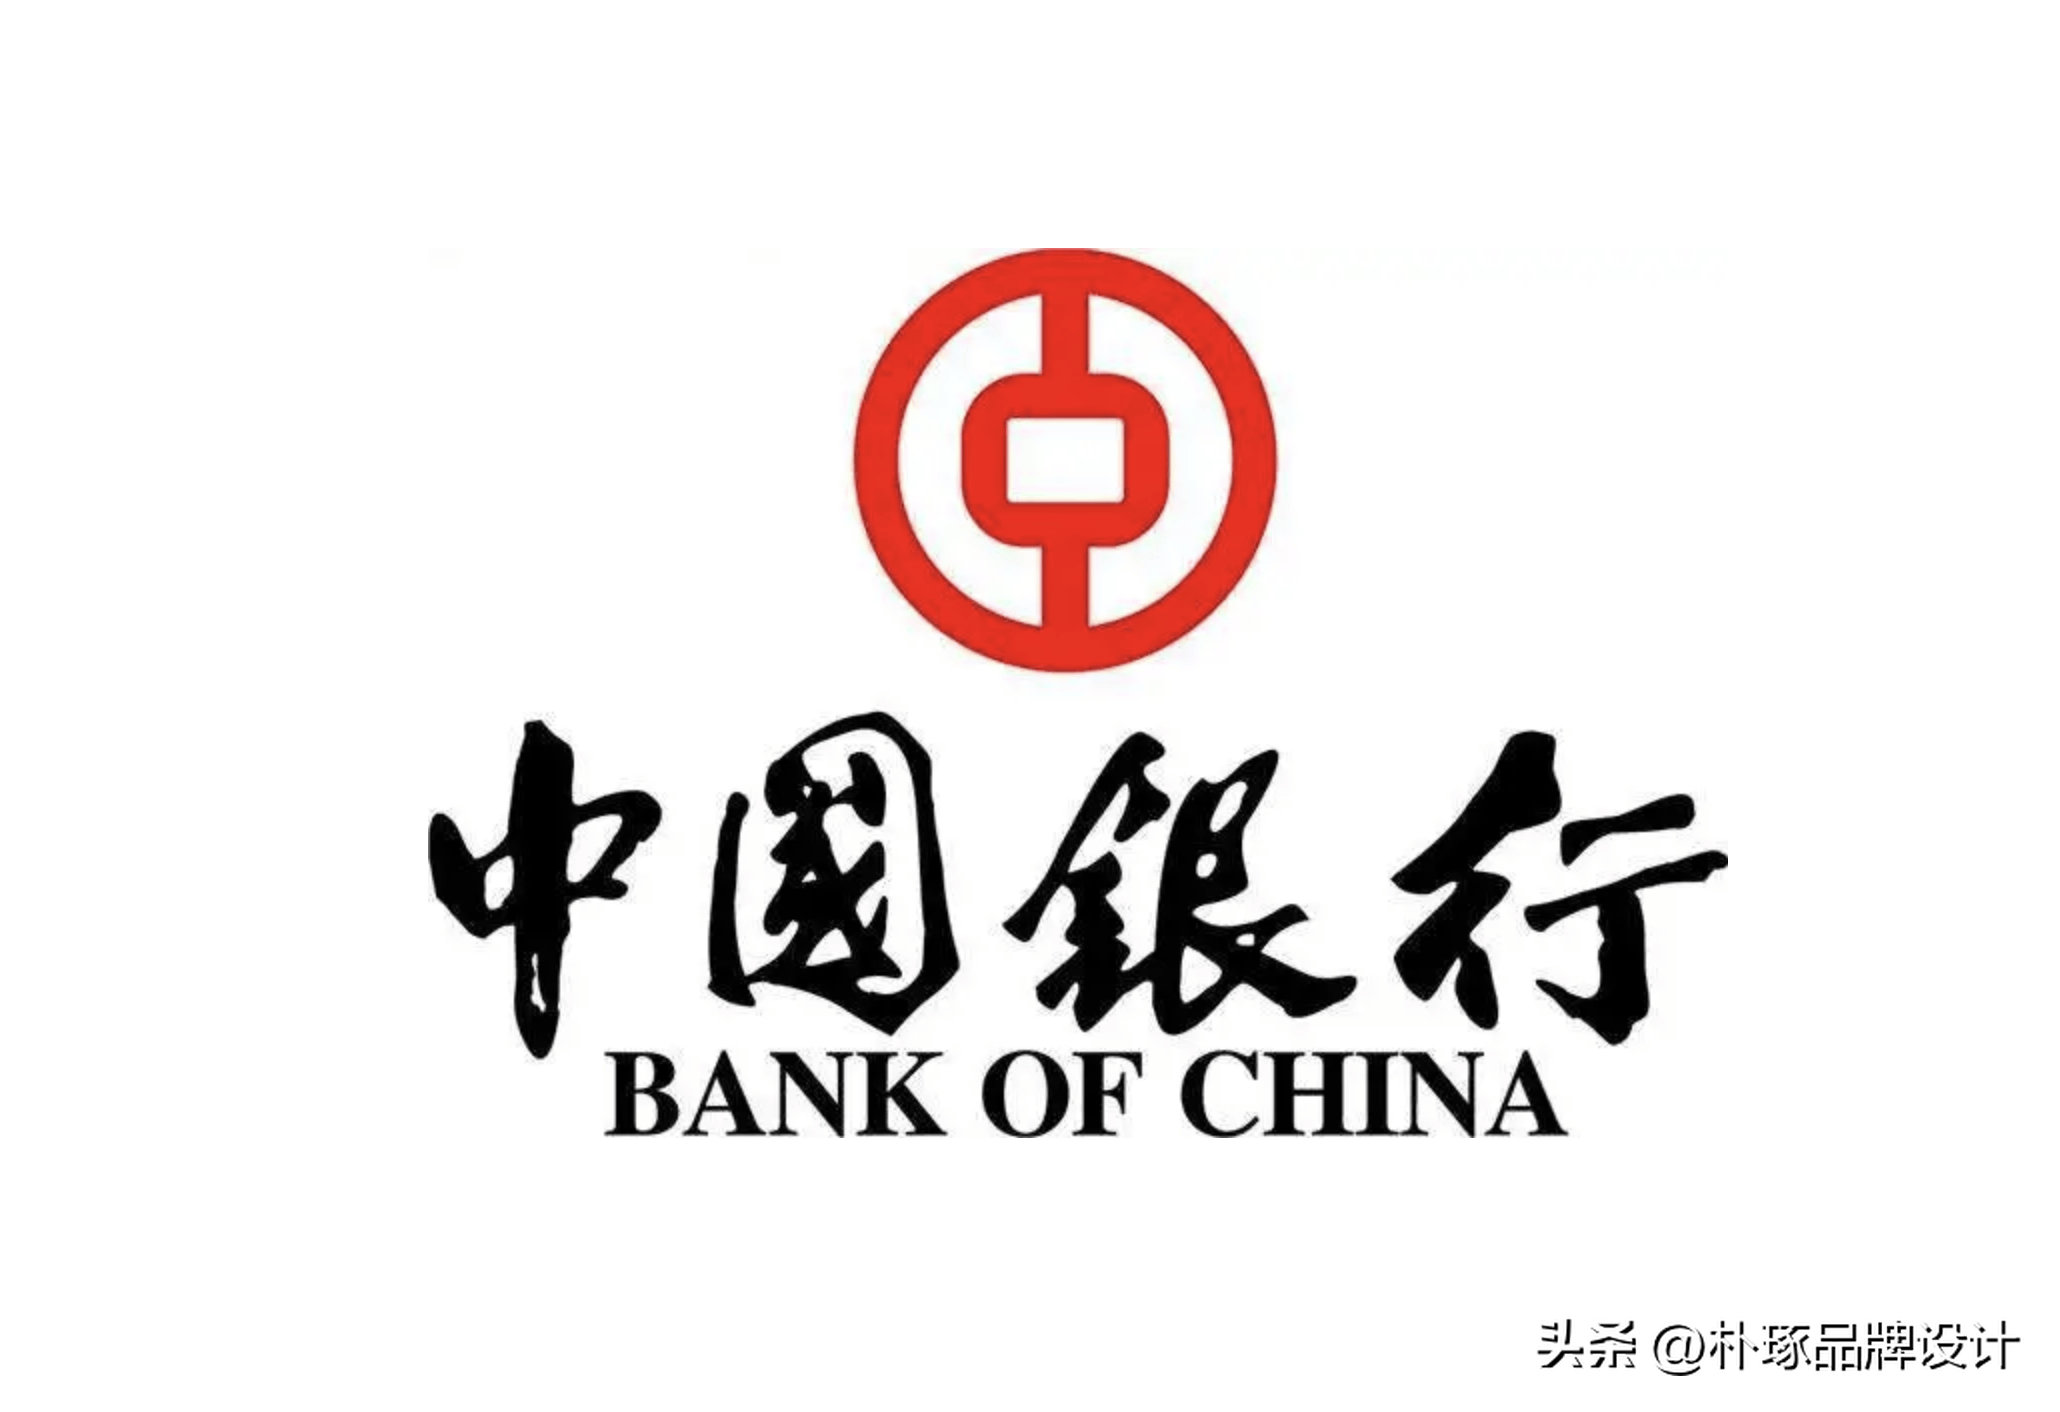 经典就是经典,中国经典logo盘点